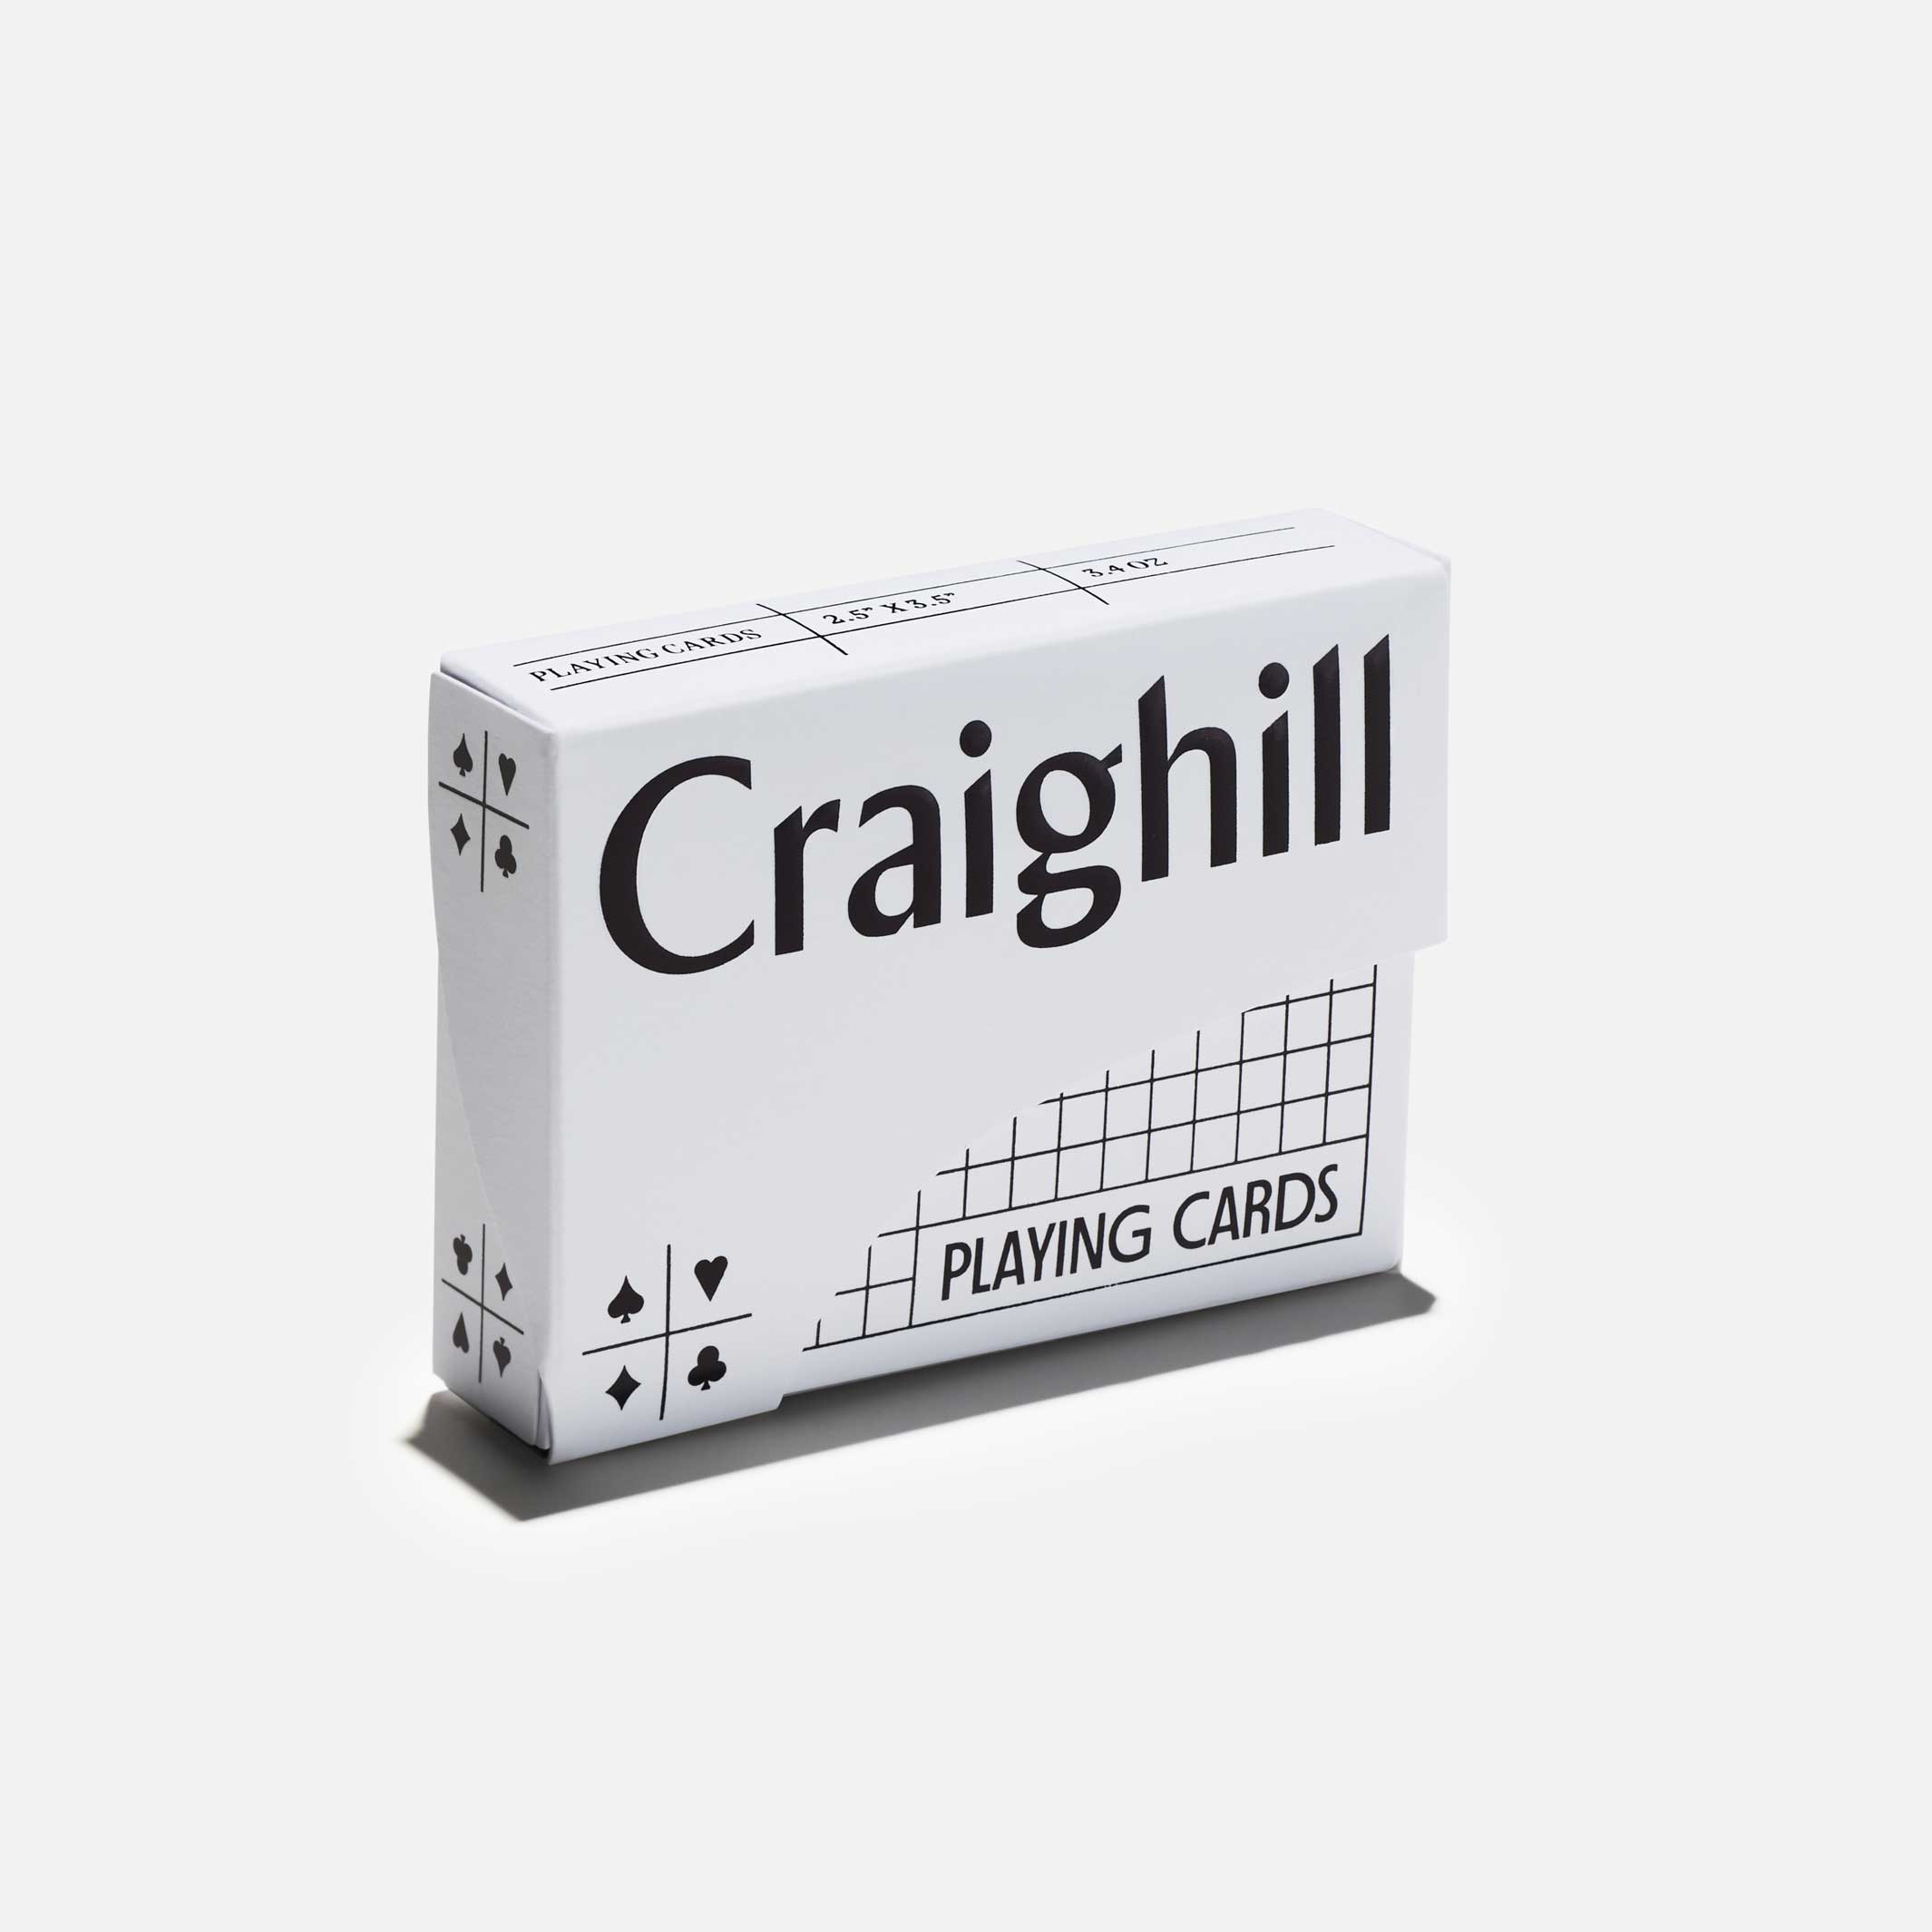 PLAYING CARDS | Orange SPIEL-KARTEN in weisser Verpackung | Craighill